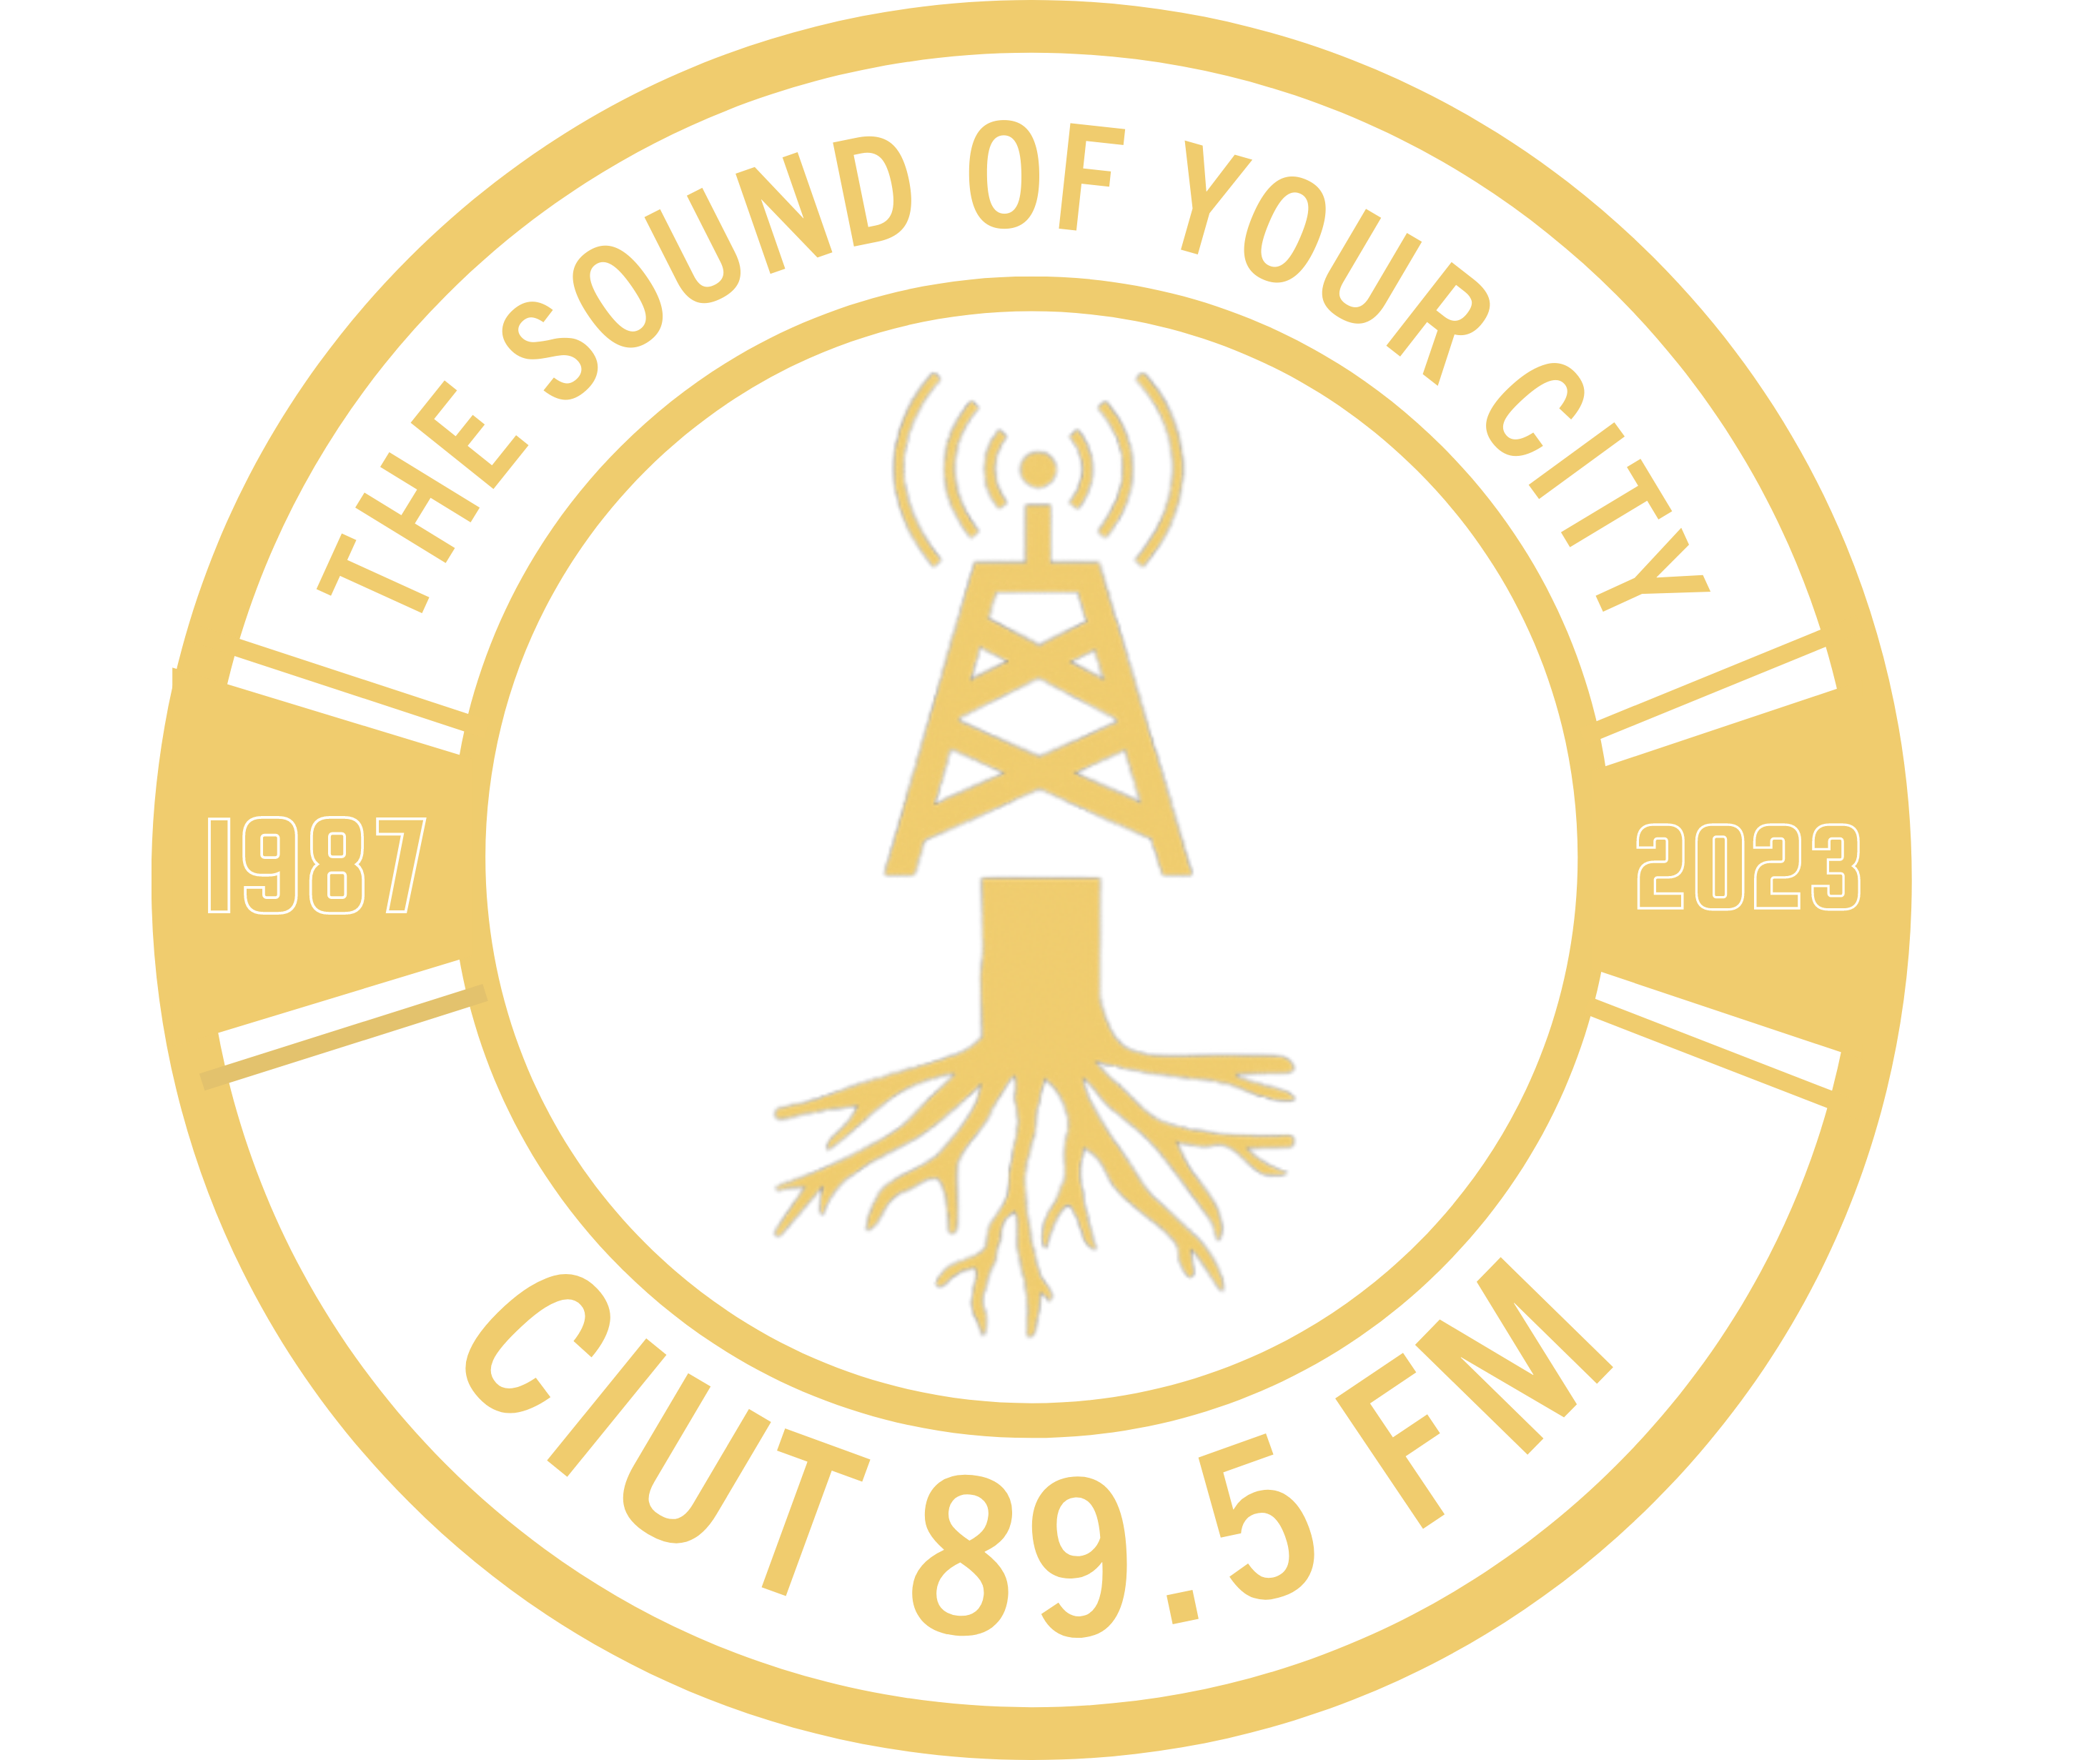 CIUT 89.5FM